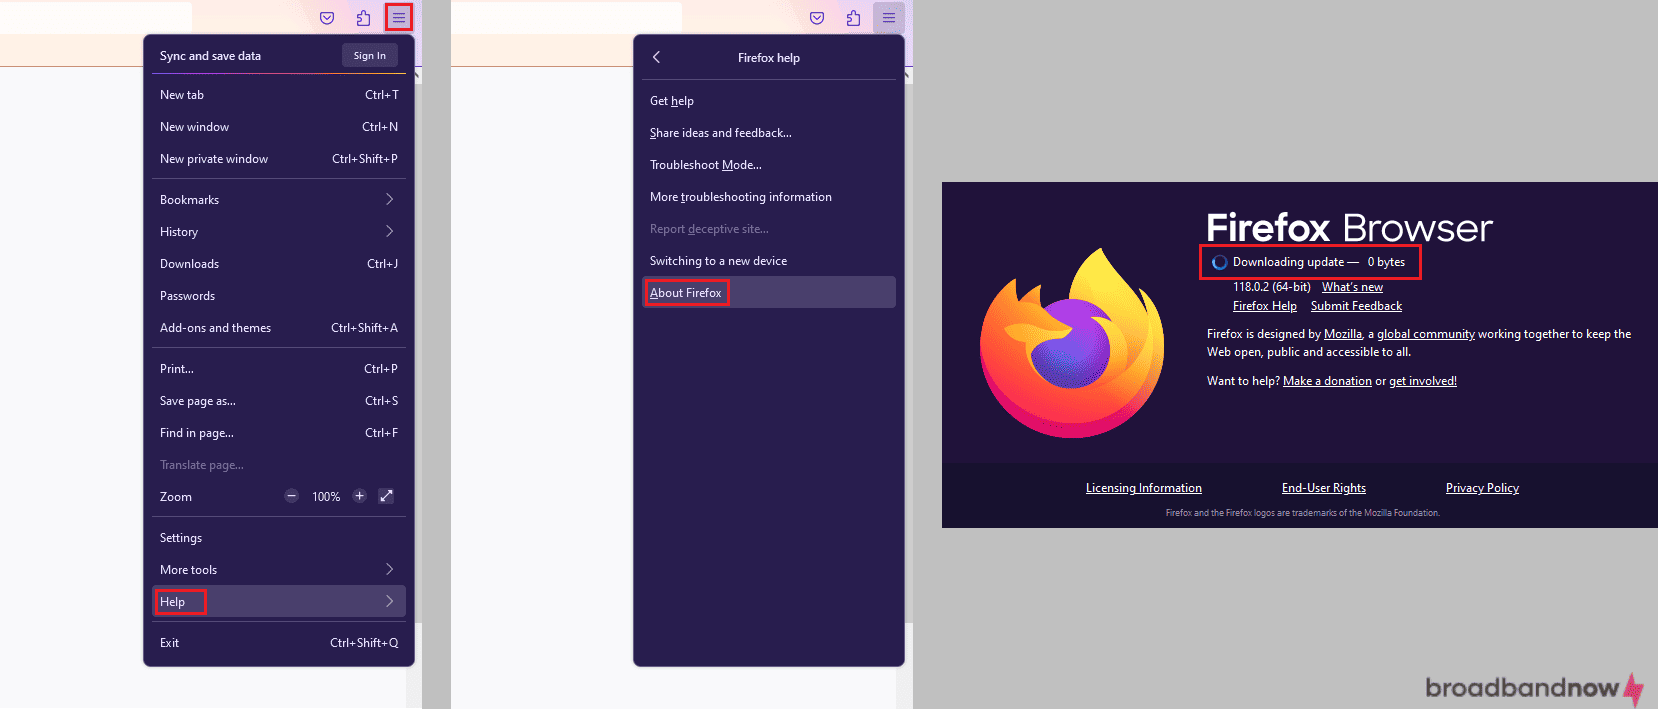 Screenshots of Mozilla Firefox update process